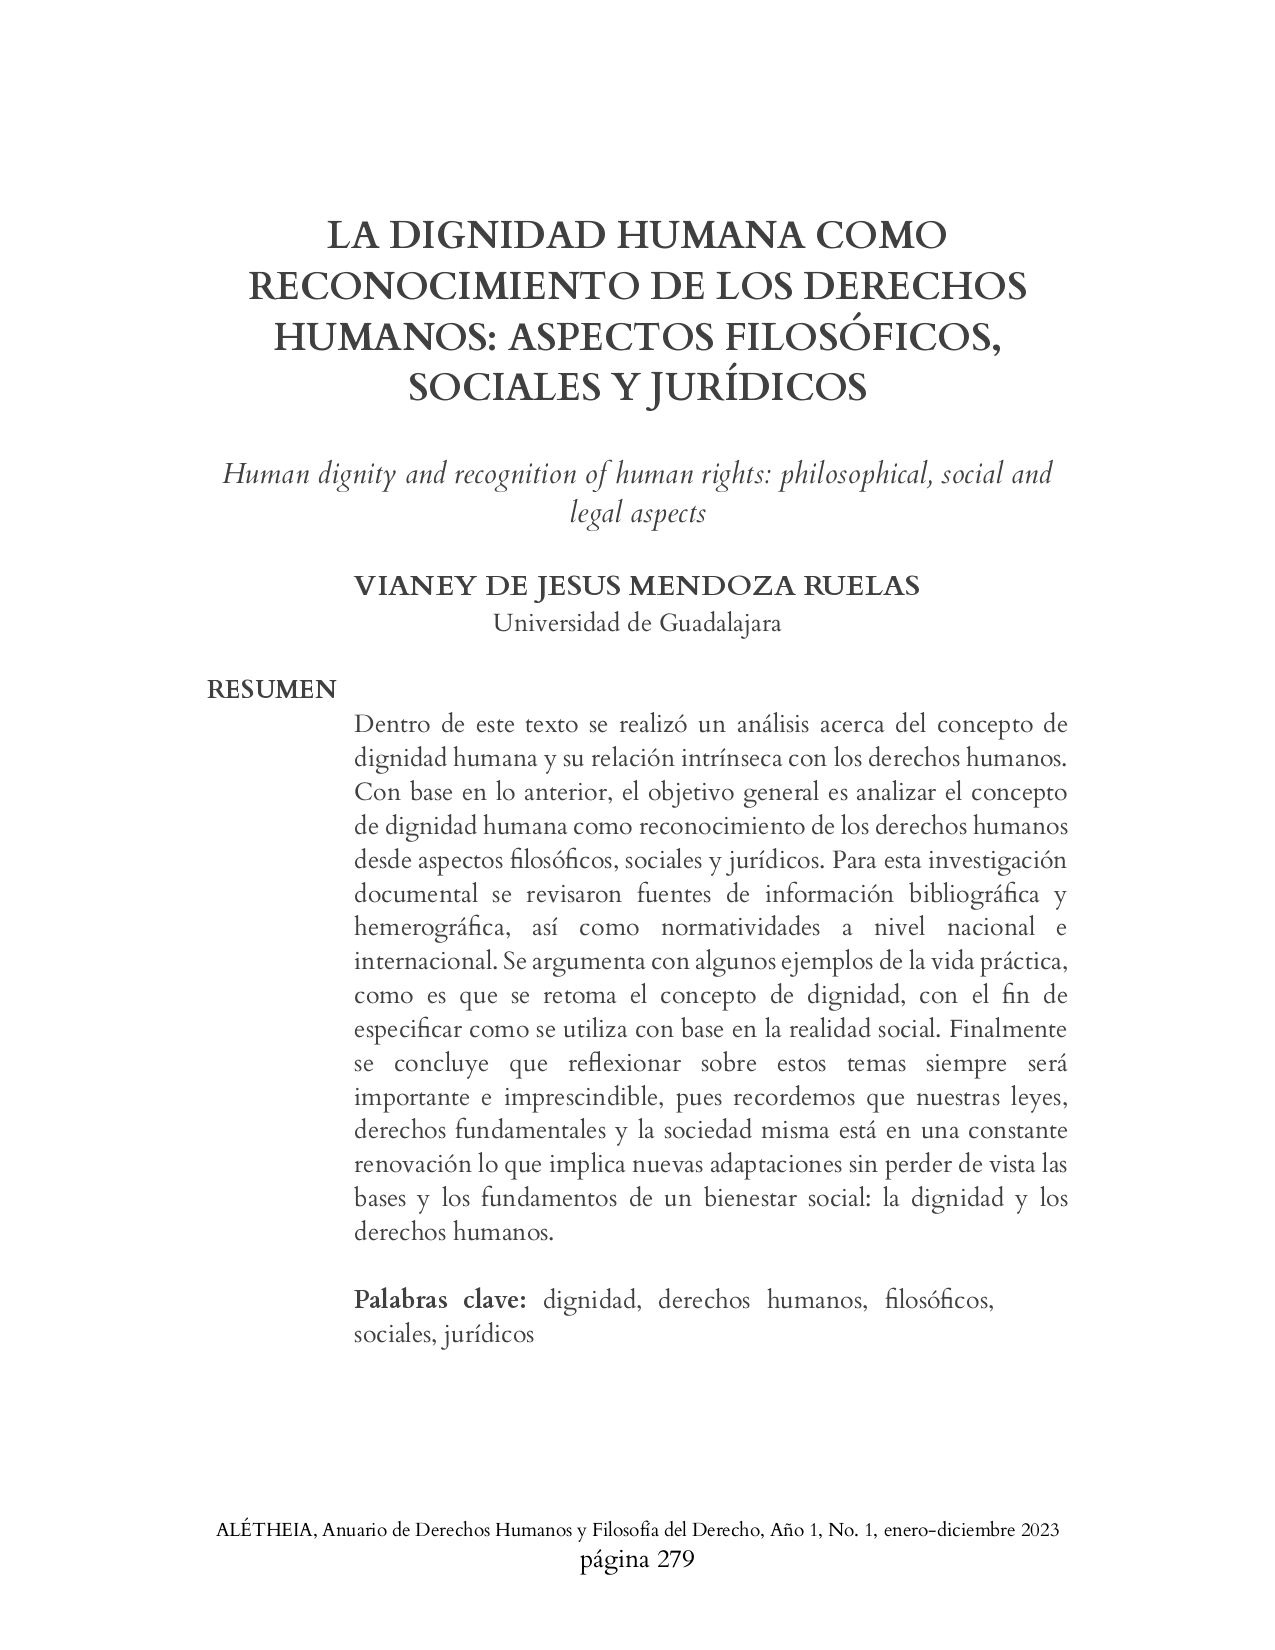 LA DIGNIDAD HUMANA COMO RECONOCIMIENTO DE LOS DERECHOS HUMANOS: ASPECTOS FILOSÓFICOS, SOCIALES Y JURÍDICOS